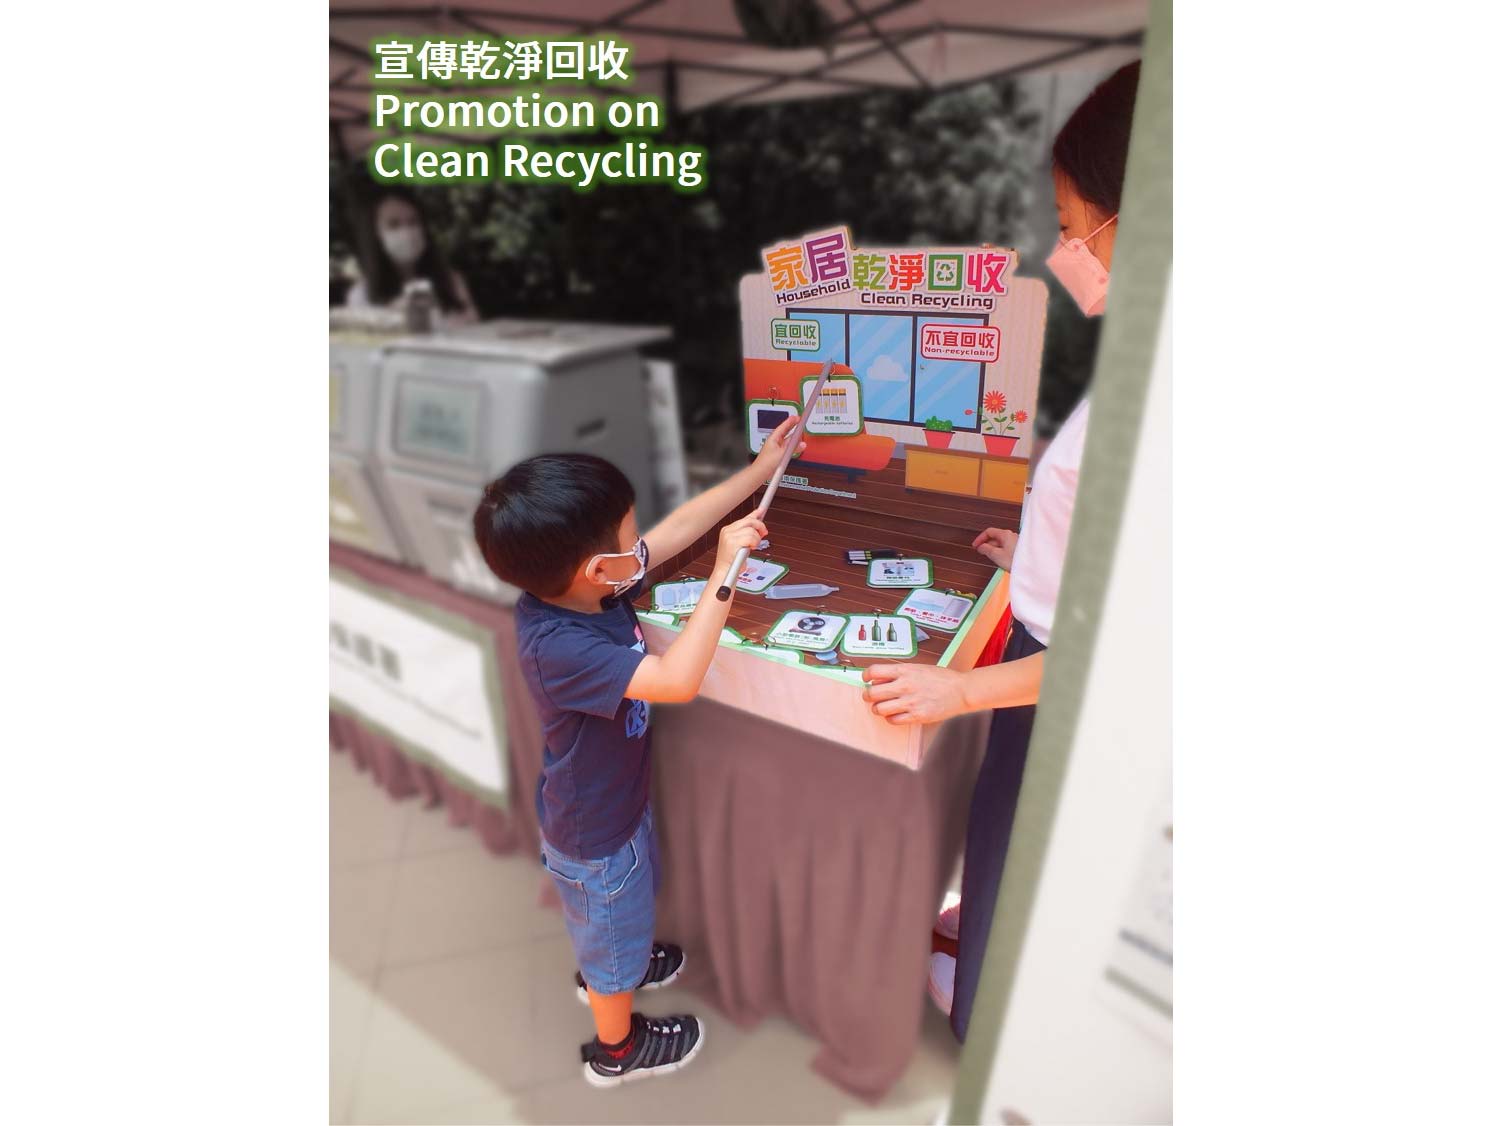 宣传干净回收 - 小男孩正参与摊位游戏分辨「宜回收」及「不宜回收」的物品游戏